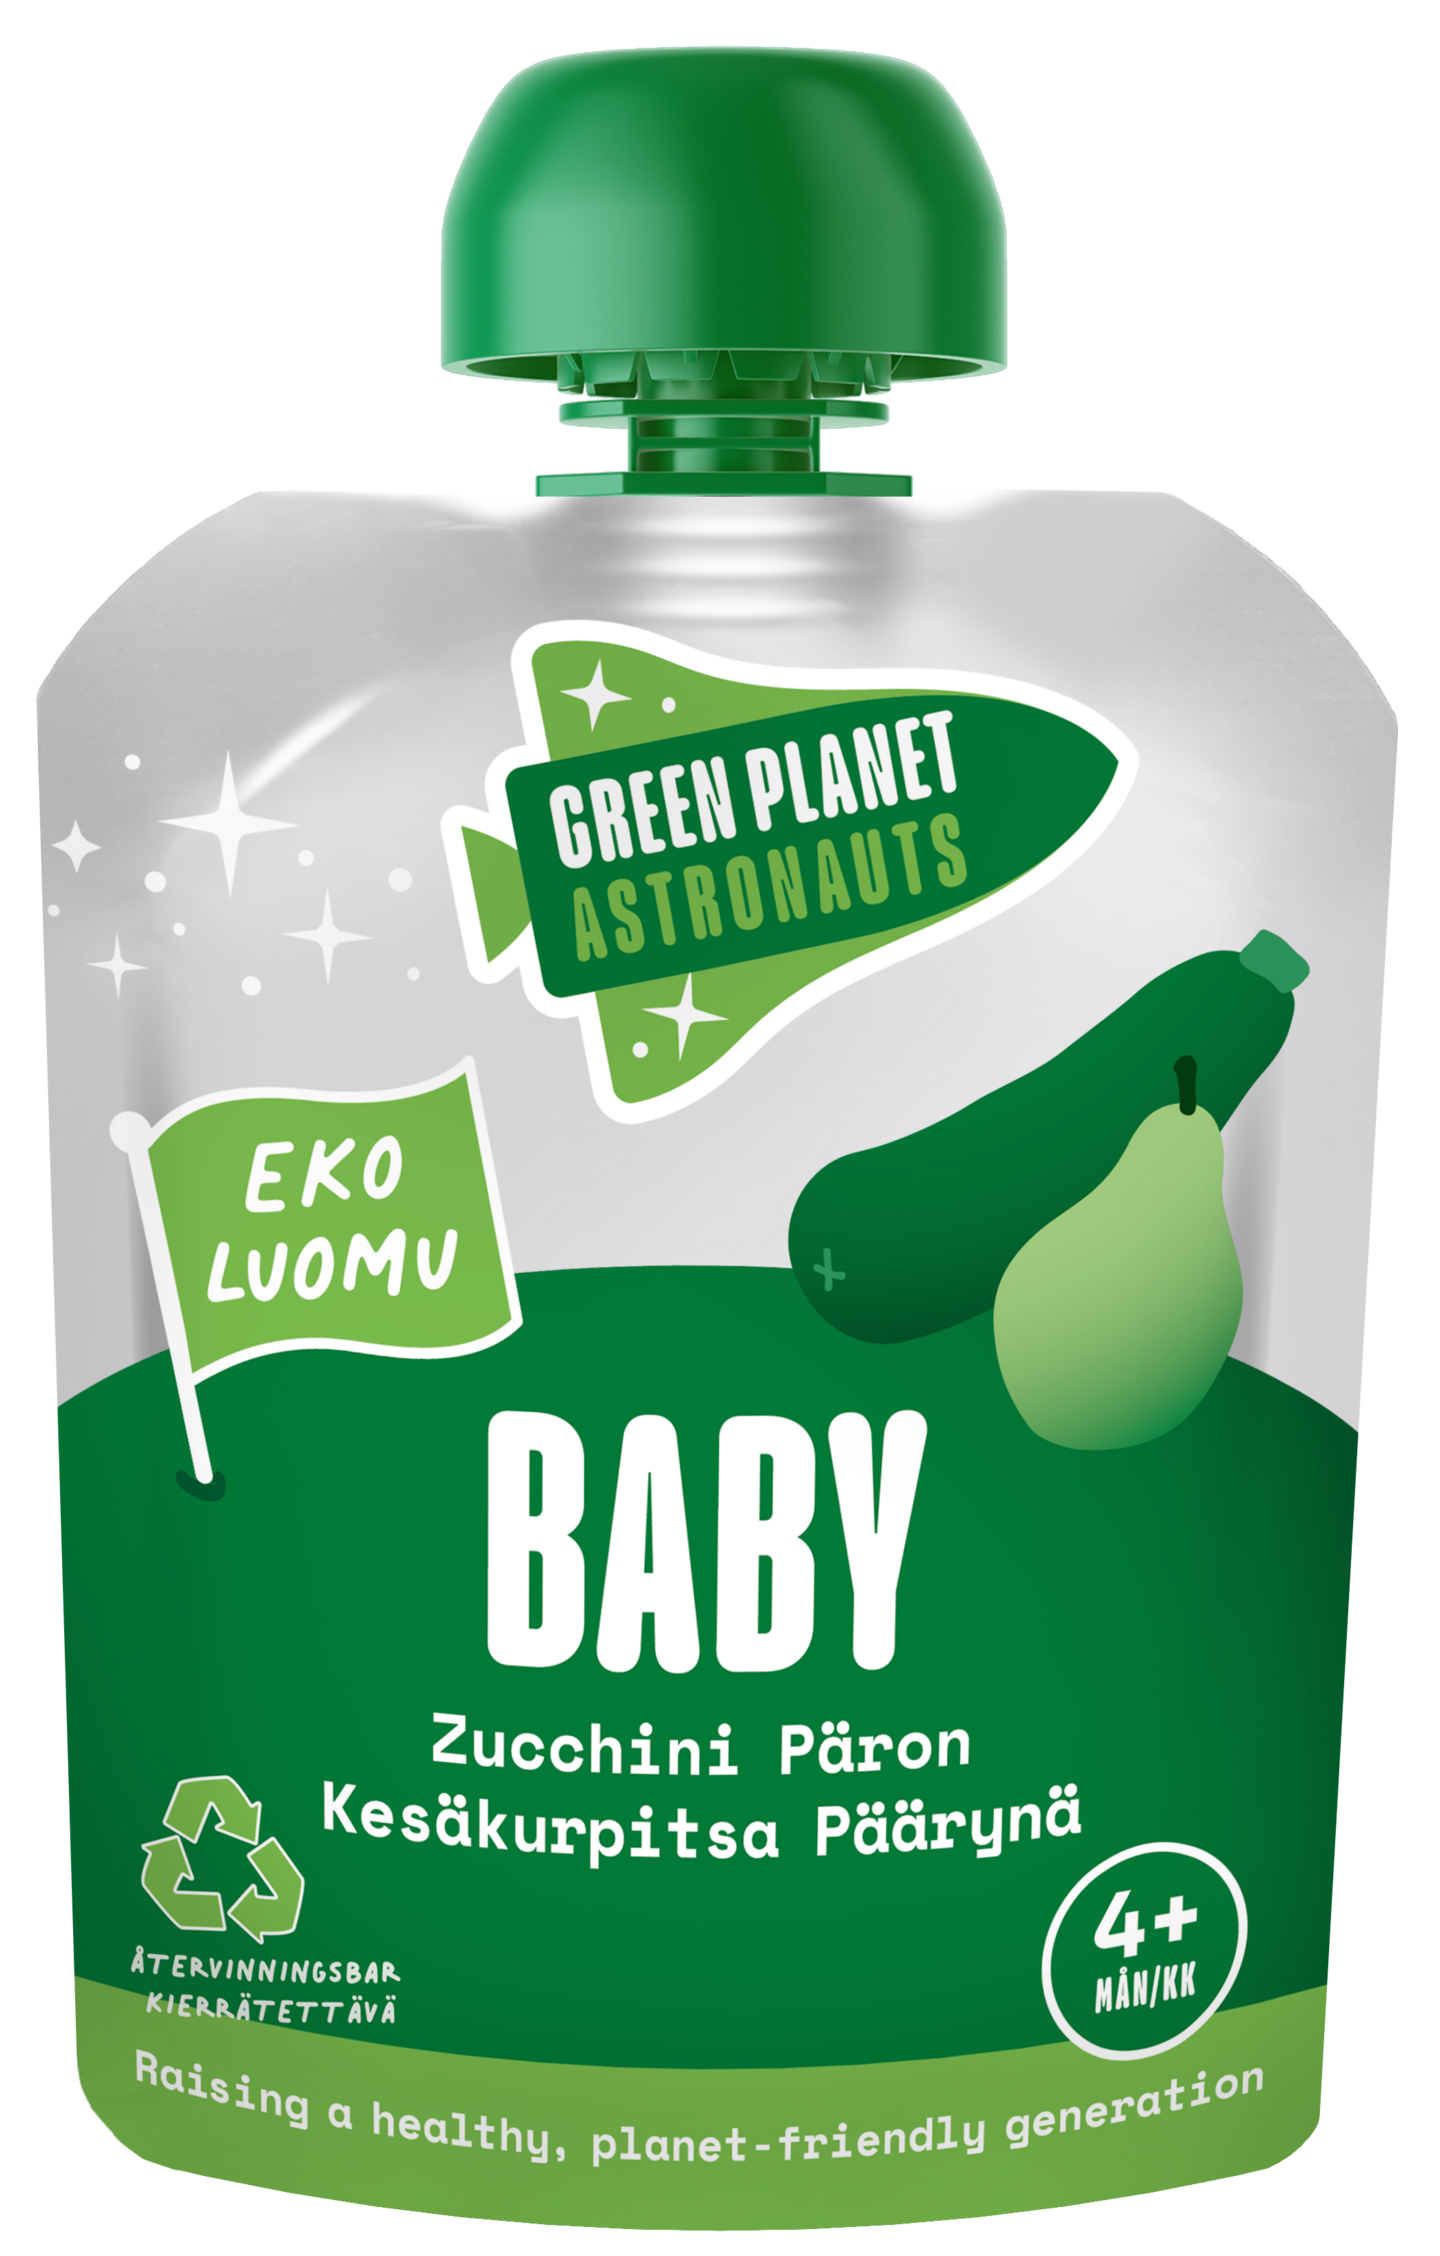 Green Planet Astronauts Luomu Kesäkurpitsa Päärynä 70g 4kk